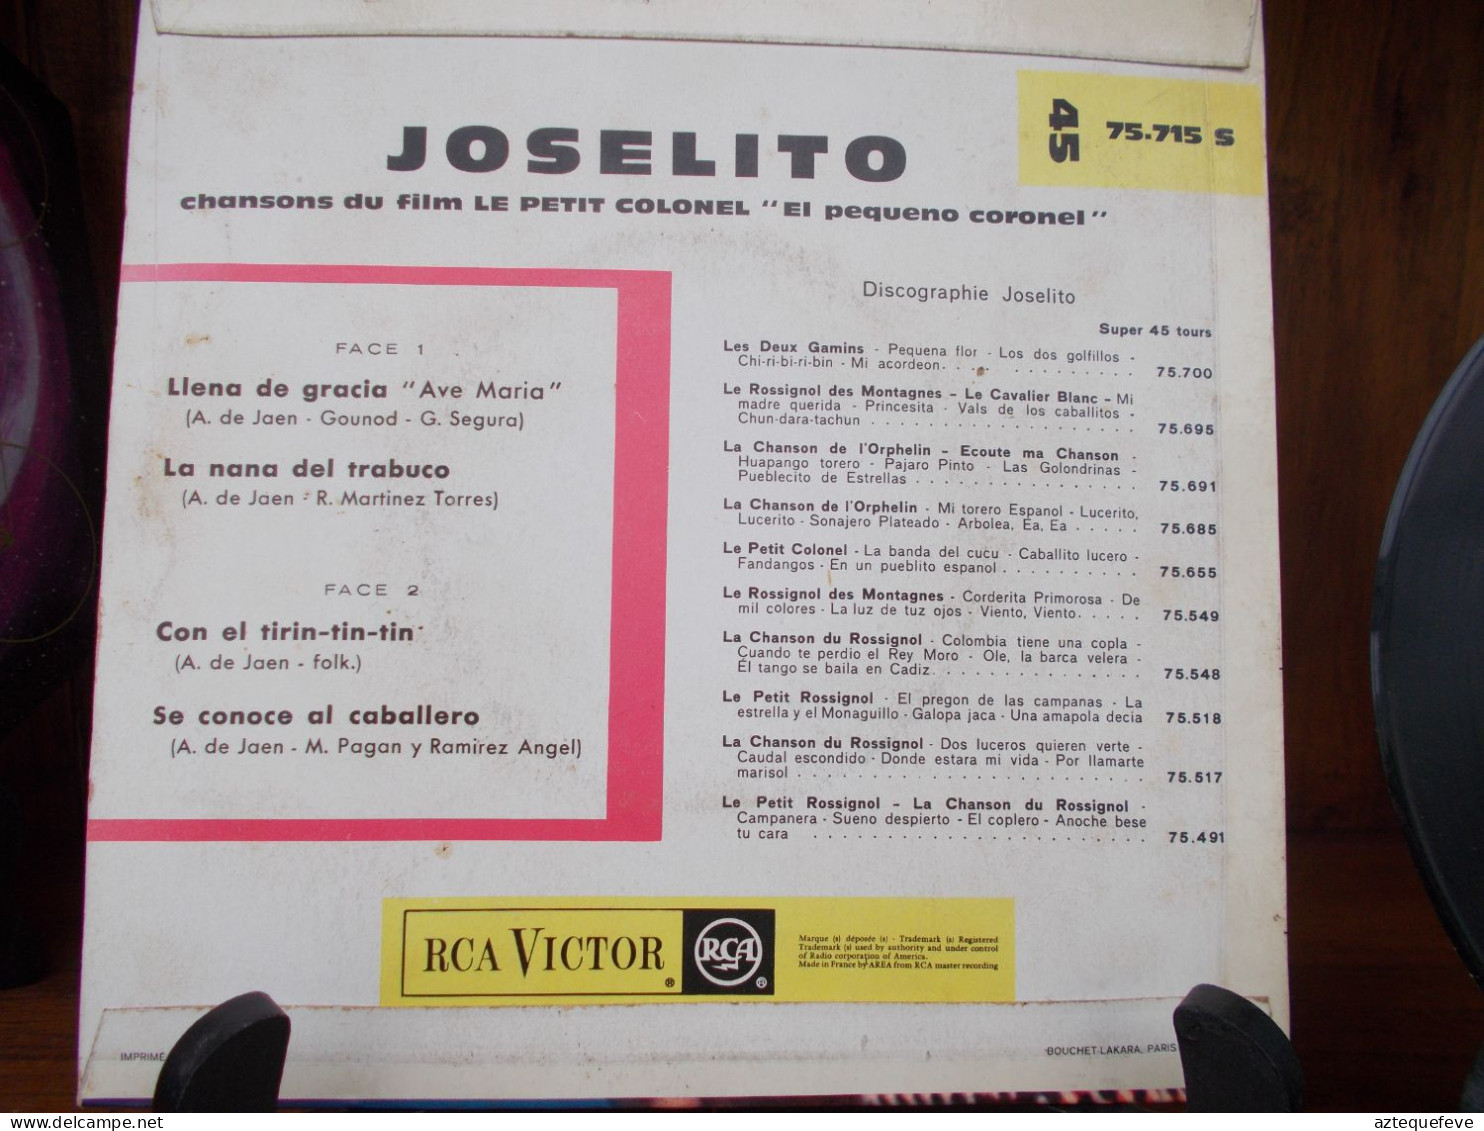 JOSELITO RCA VICTOR "LE PETIT COLONEL" Etc.. 45 T 75.715 S - Spezialformate